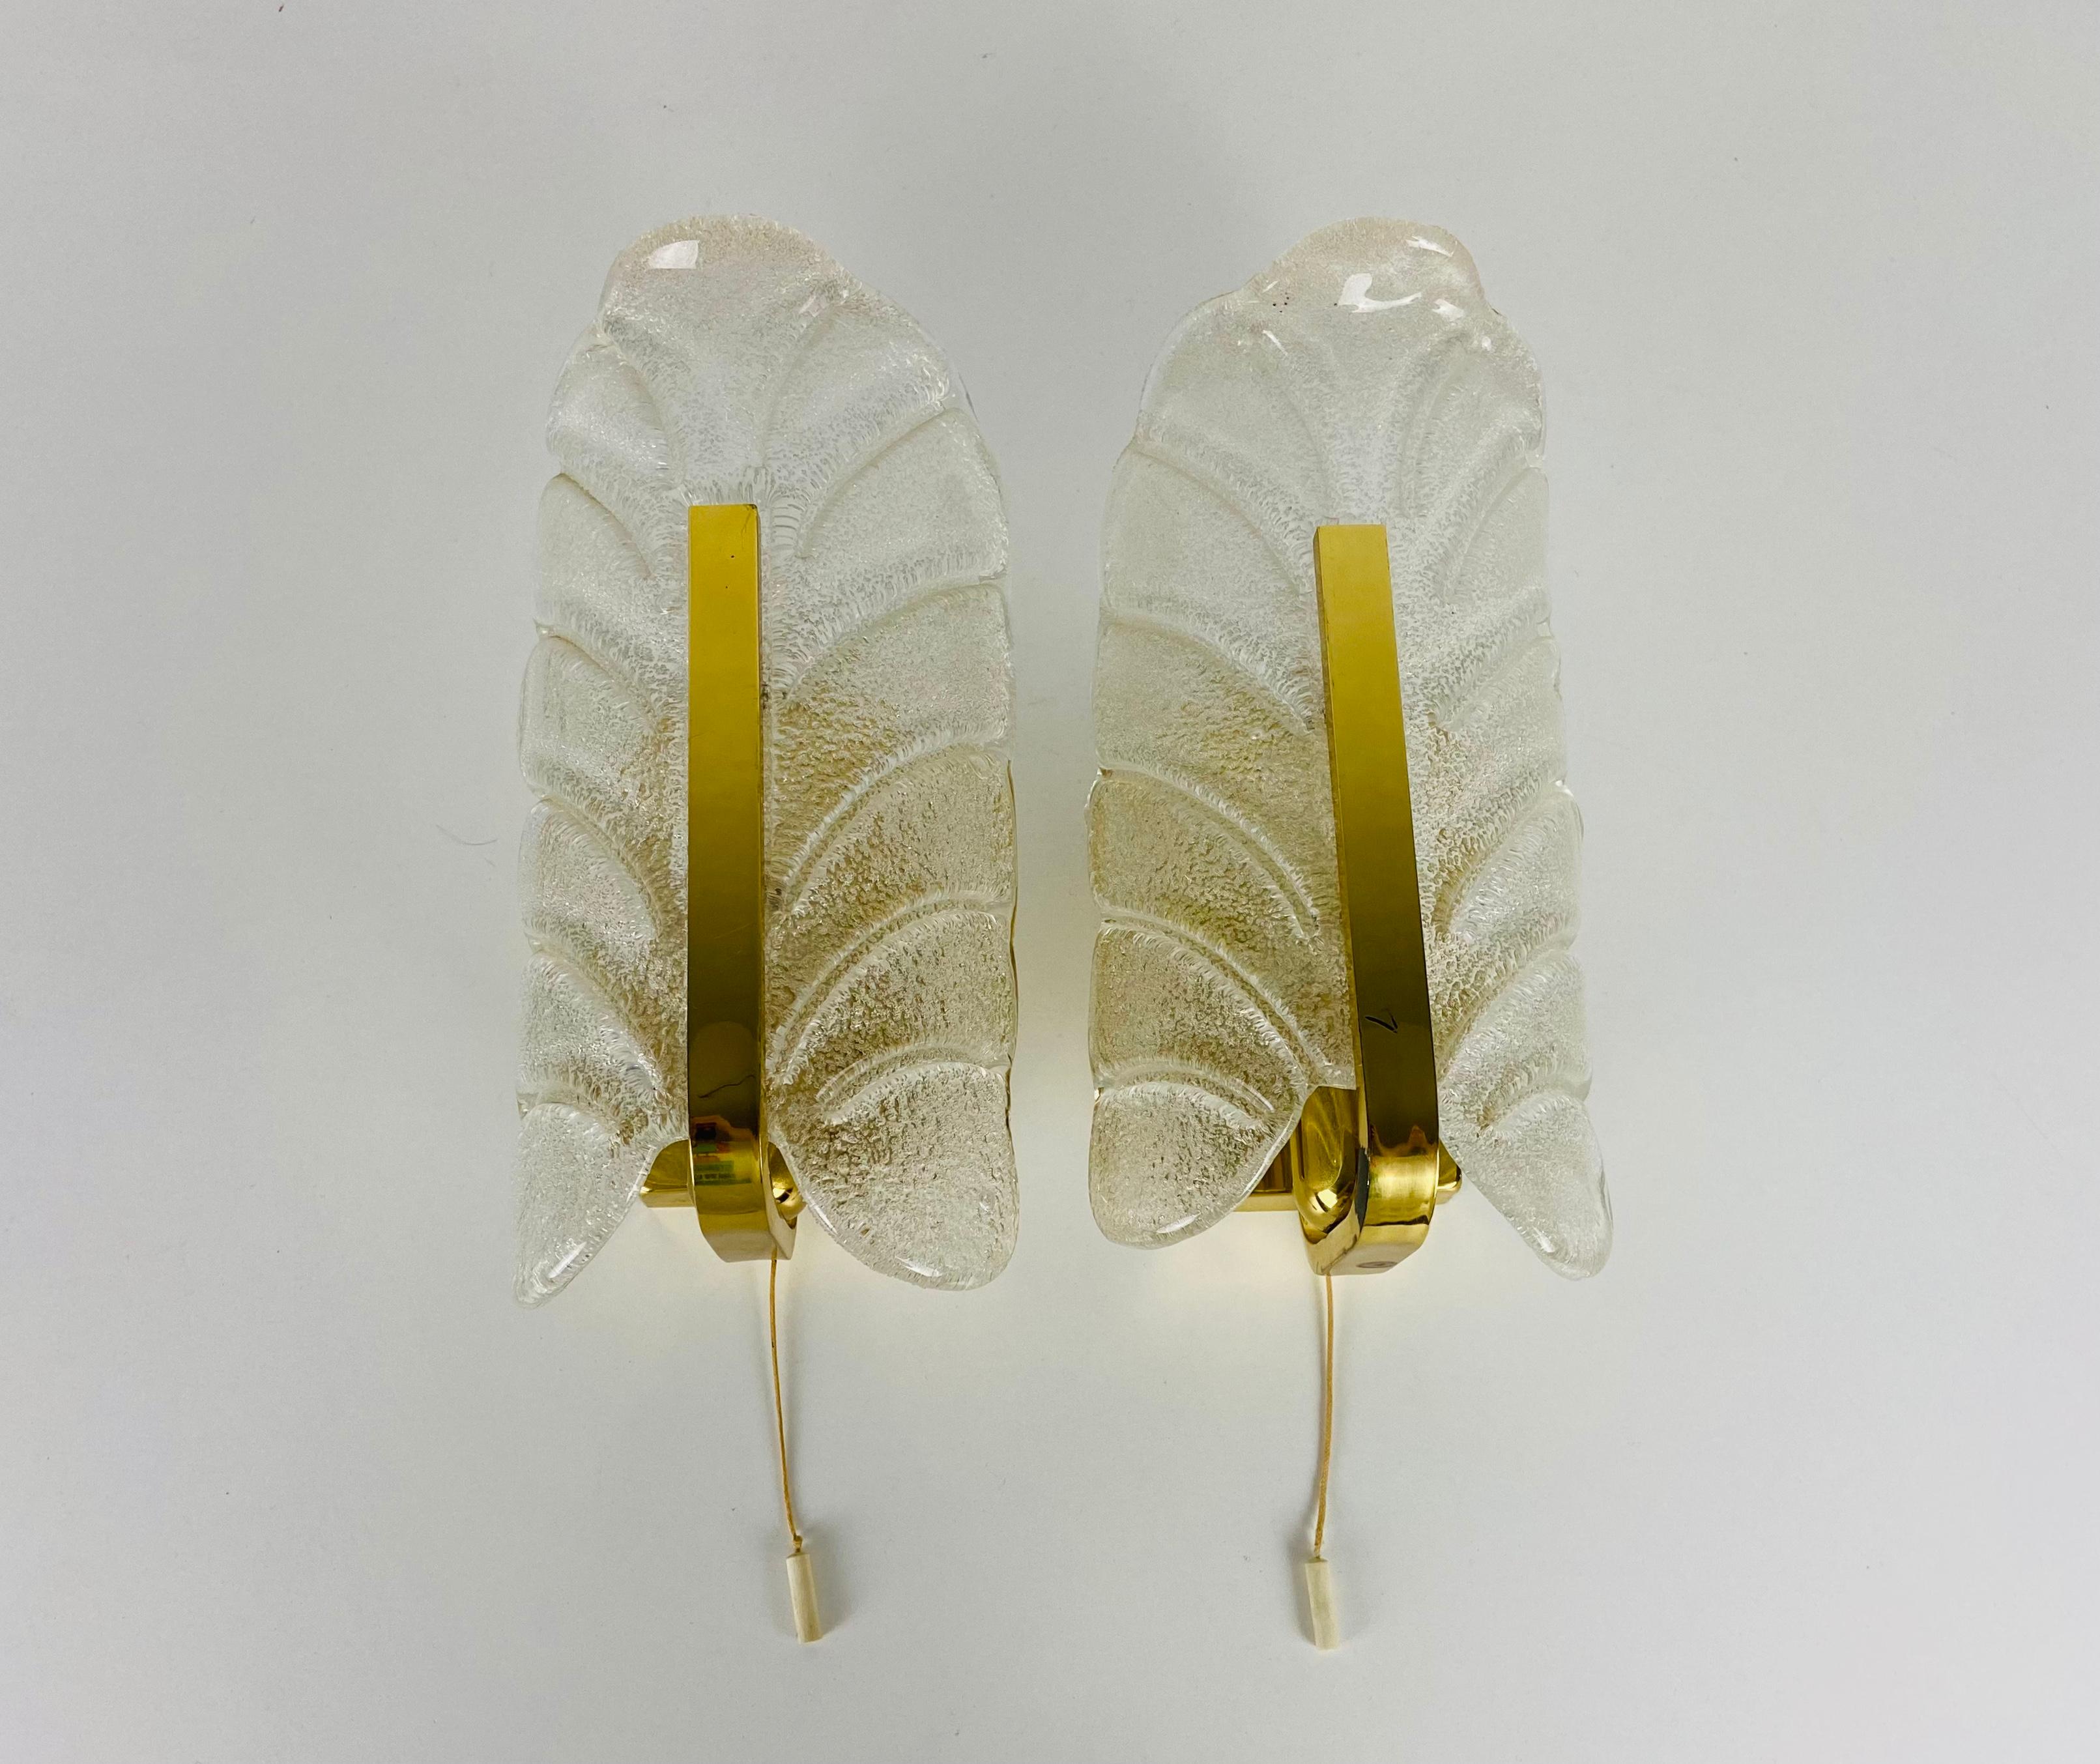 Une belle paire d'appliques modernes de Carl Fagerlund pour Orrefors, fabriquées dans les années 1980. Ils sont fabriqués en laiton et en verre de glace. Le dos est en métal.

Les éclairages nécessitent des ampoules E14 et fonctionnent à la fois